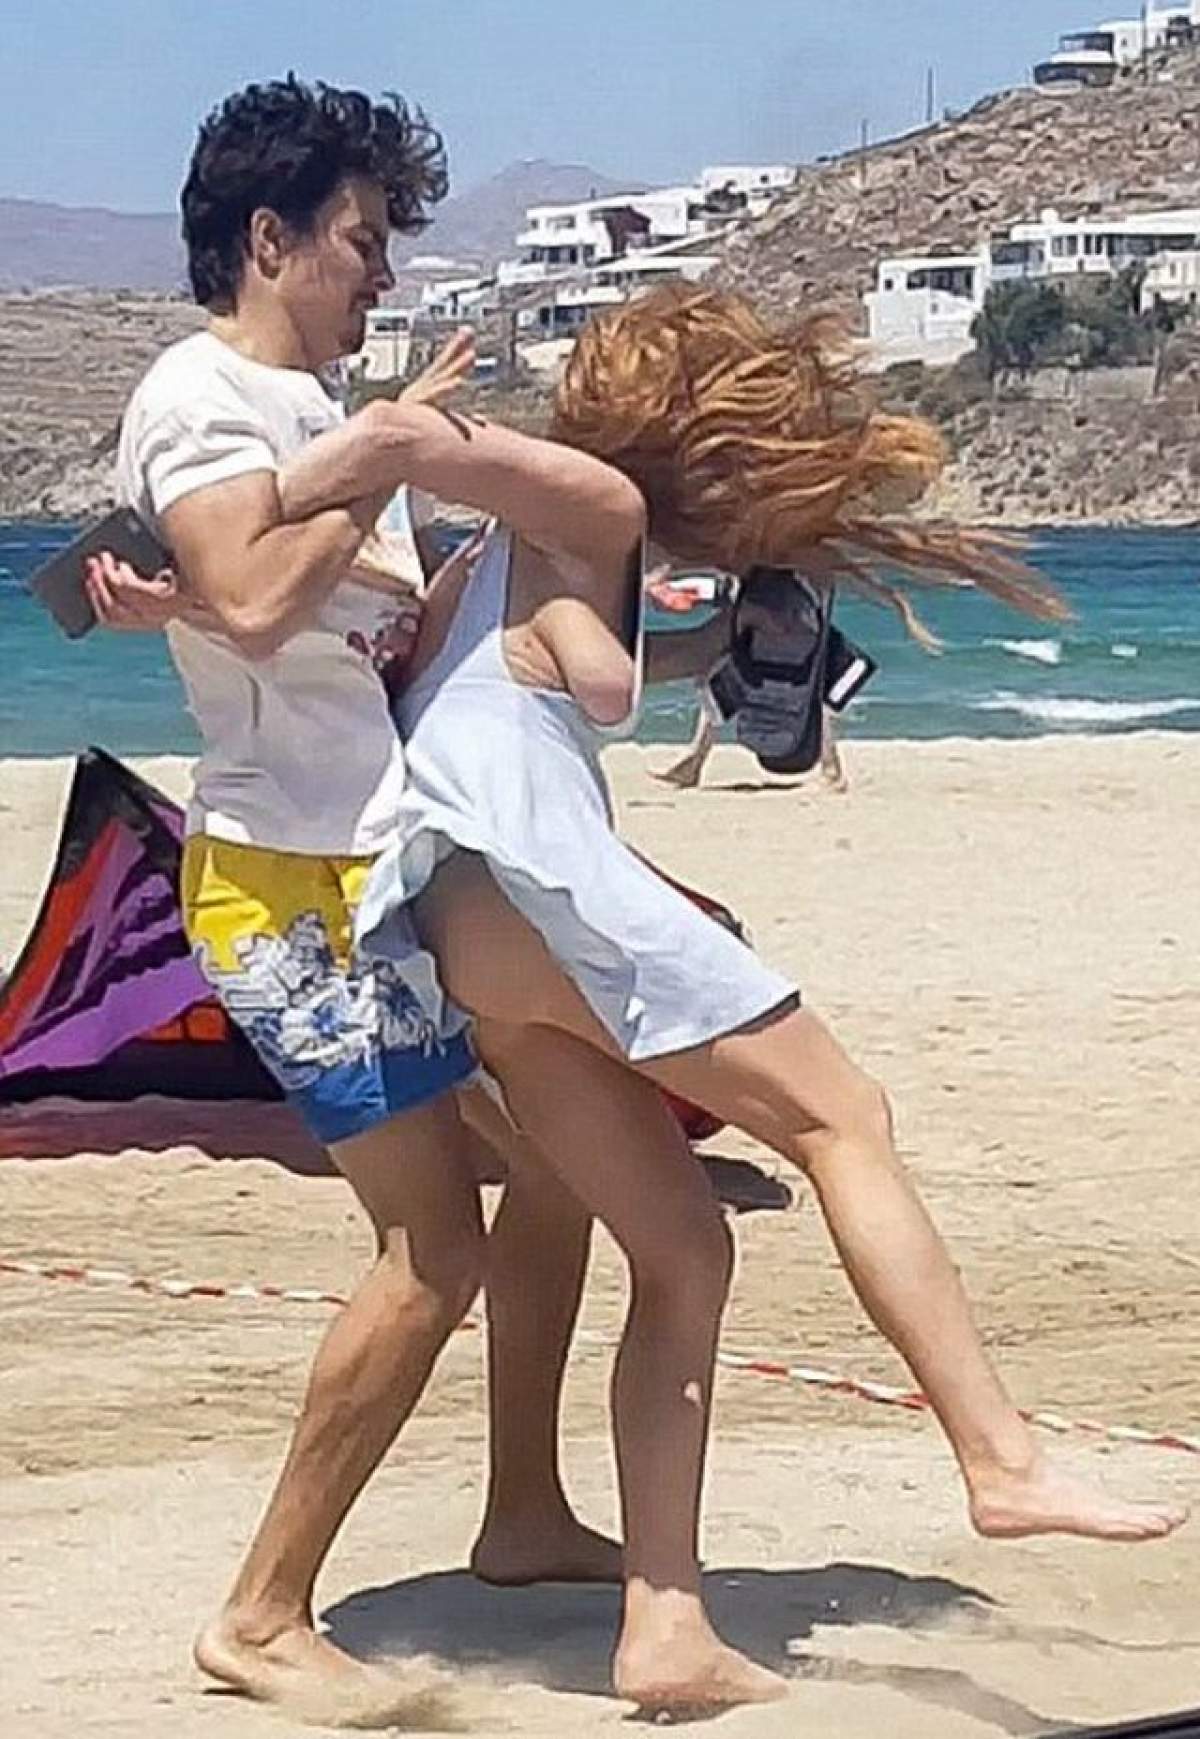 VIDEO / Adevăratul motiv pentru care Lindsay Lohan a fost agresată de iubitul ei, pe plajă, a ieșit la iveală